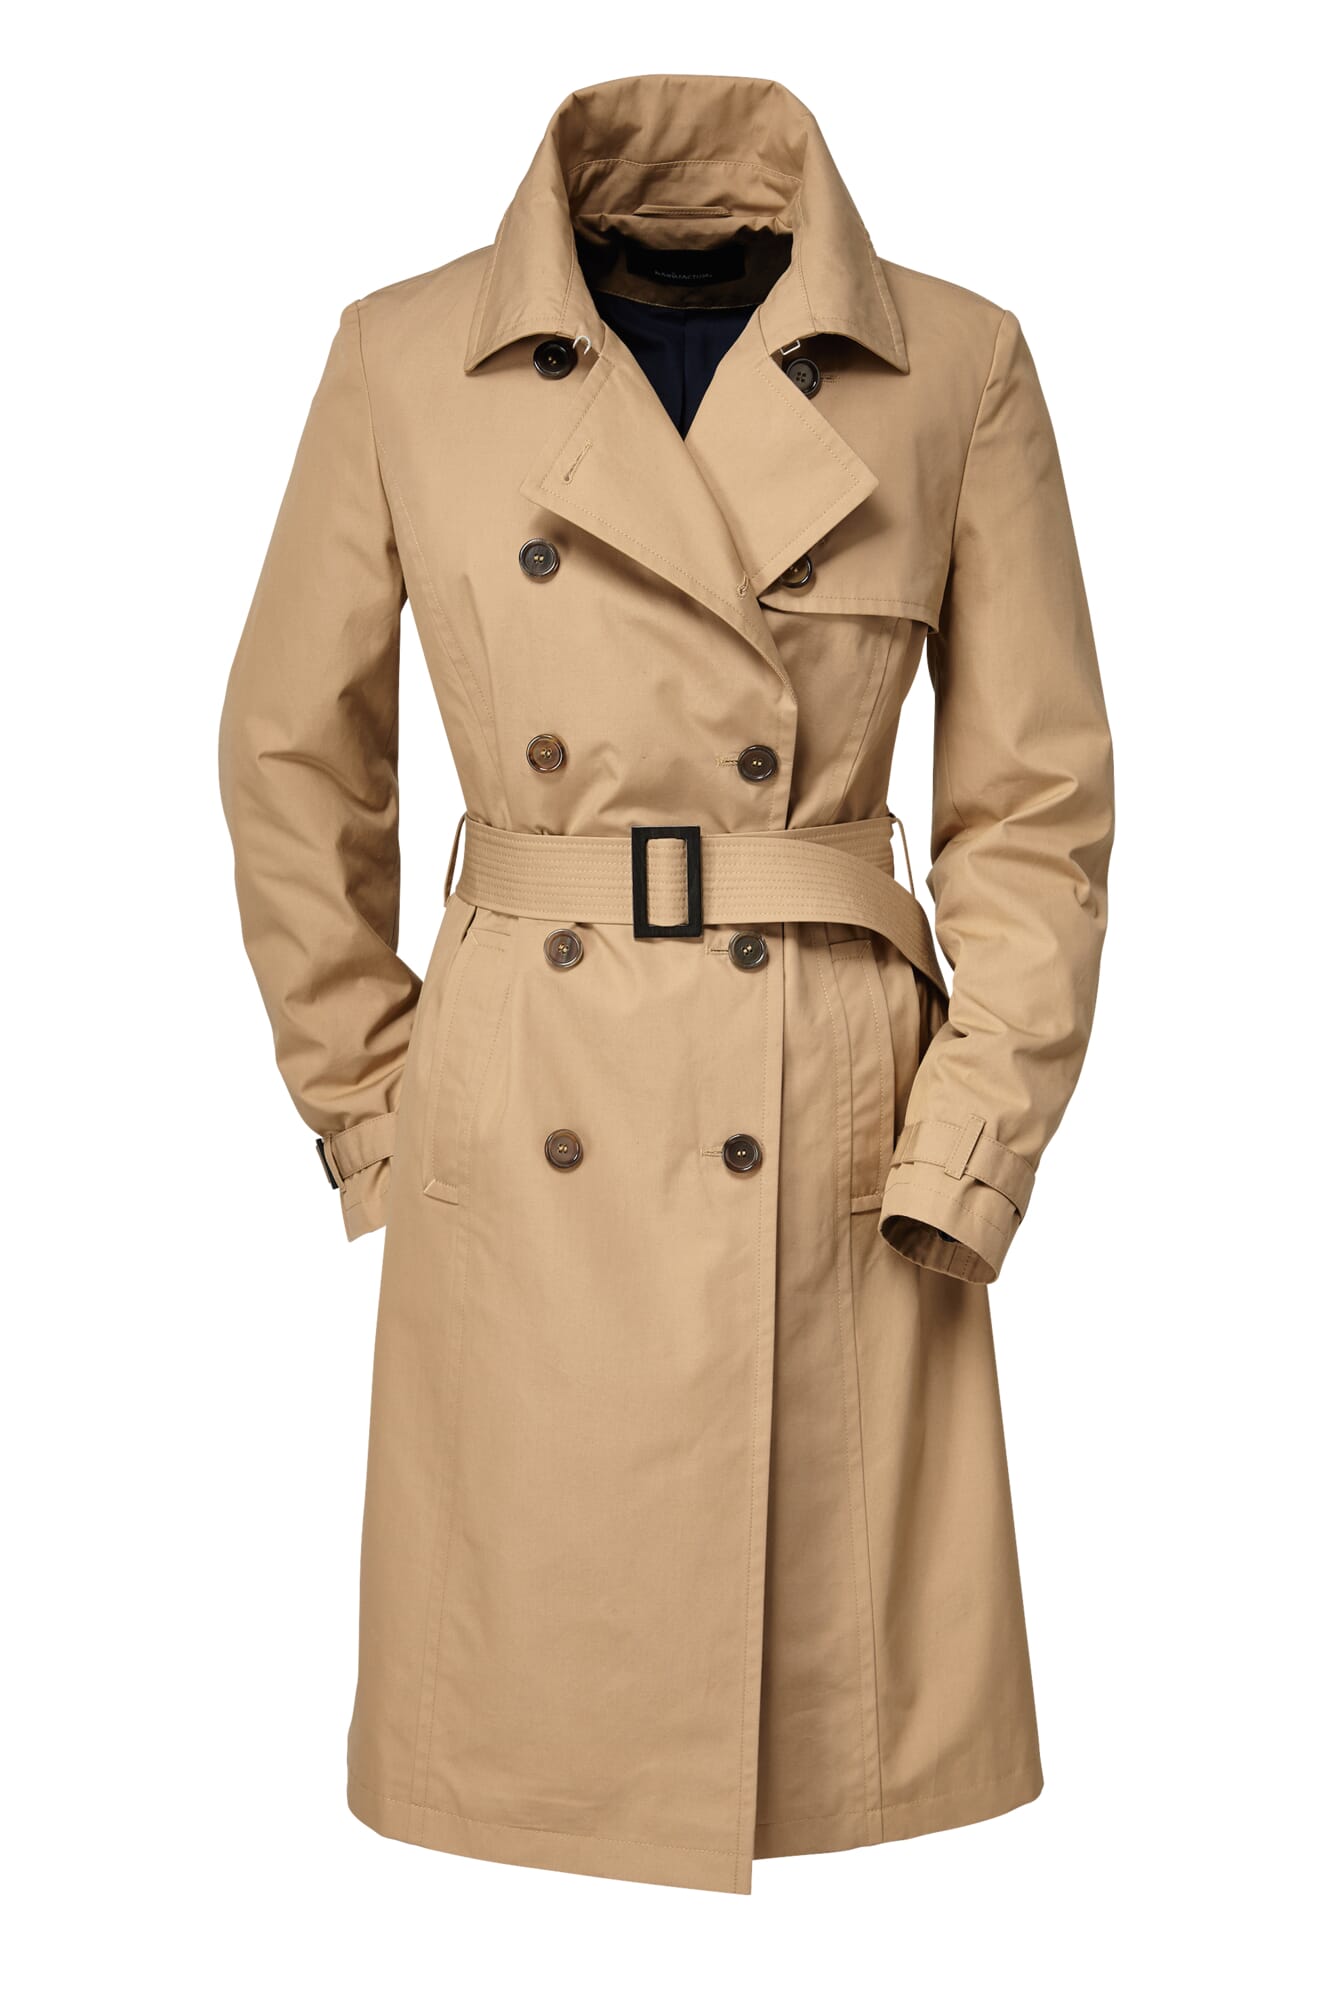 激安直営店トップスEtaProof® Women's Trench Coat, Beige | Manufactum